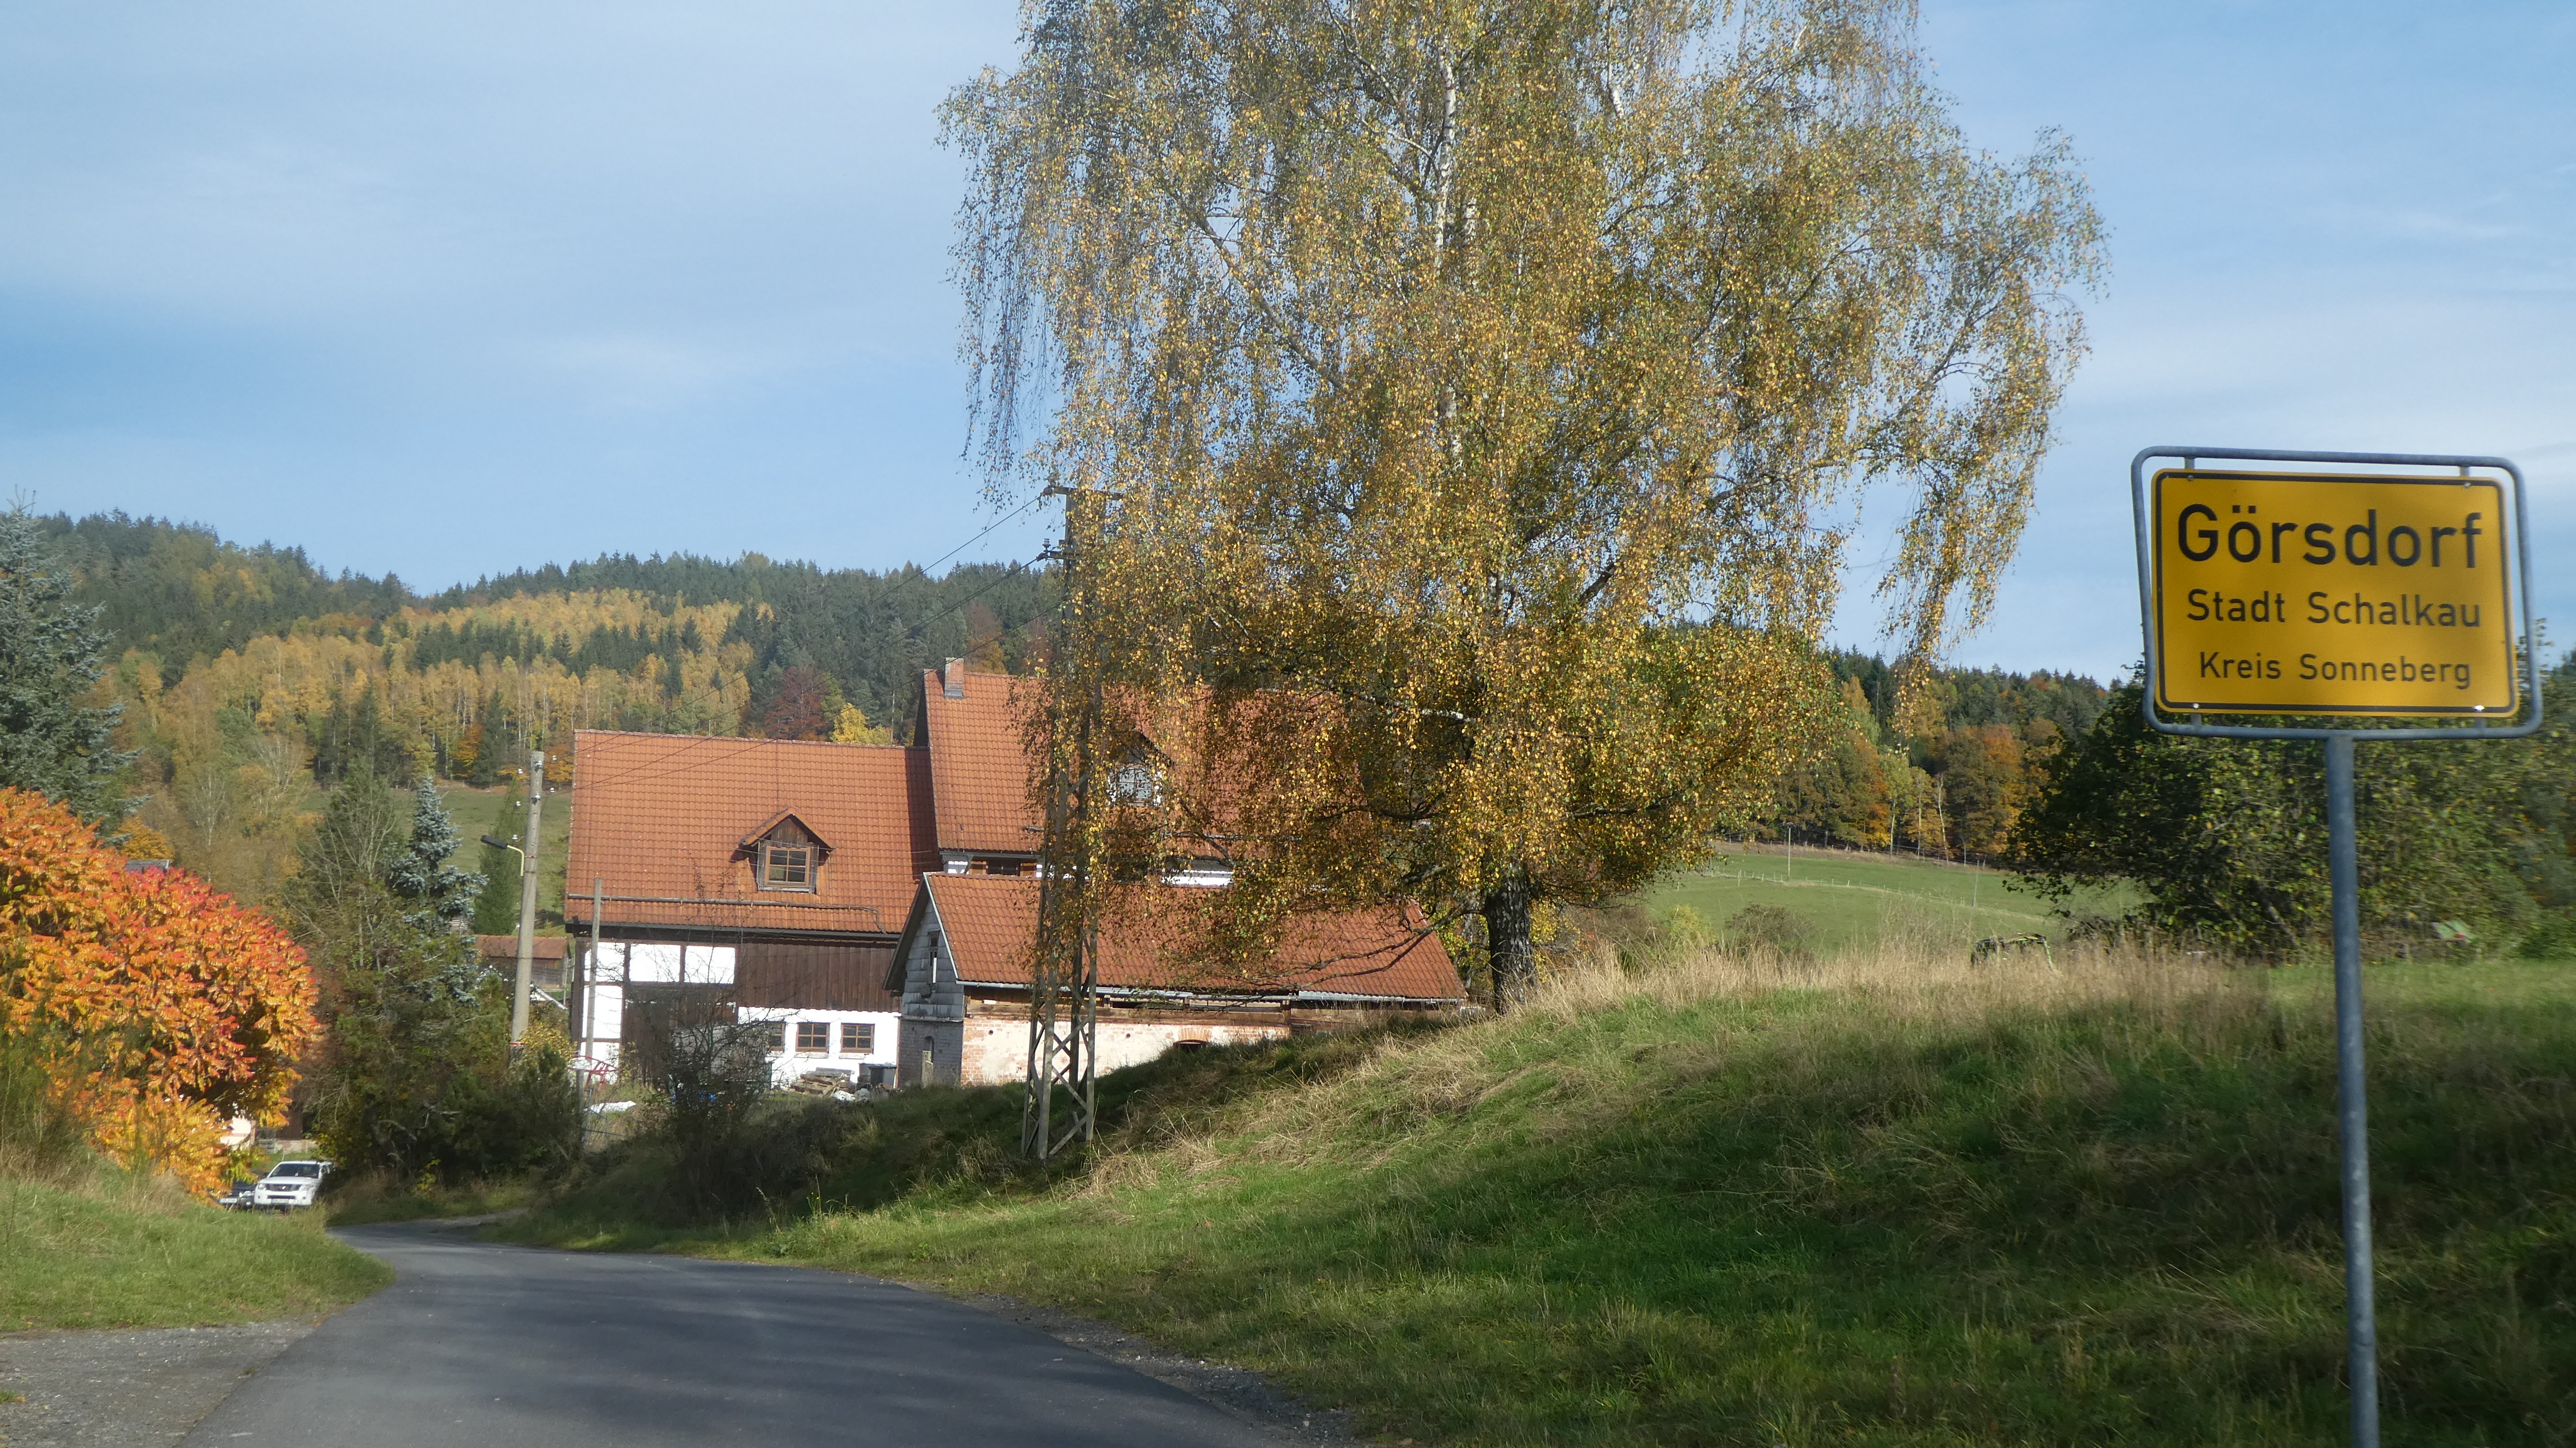 Görsdorf